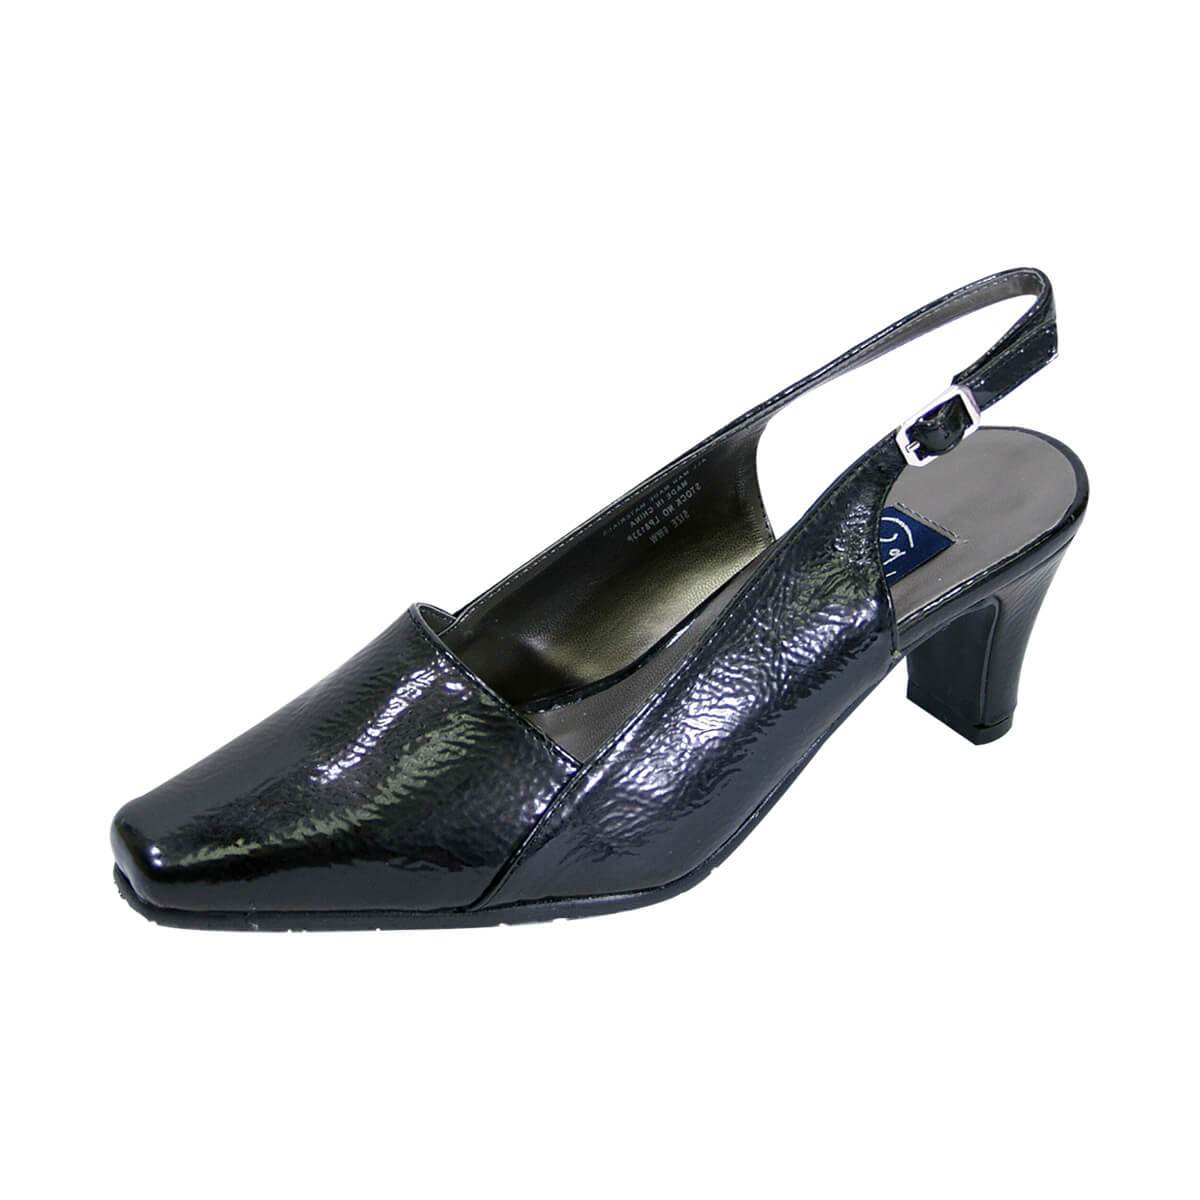 Fazpaz Peerage Celina Women's Wide Width Patent Leather Slingback Shoes